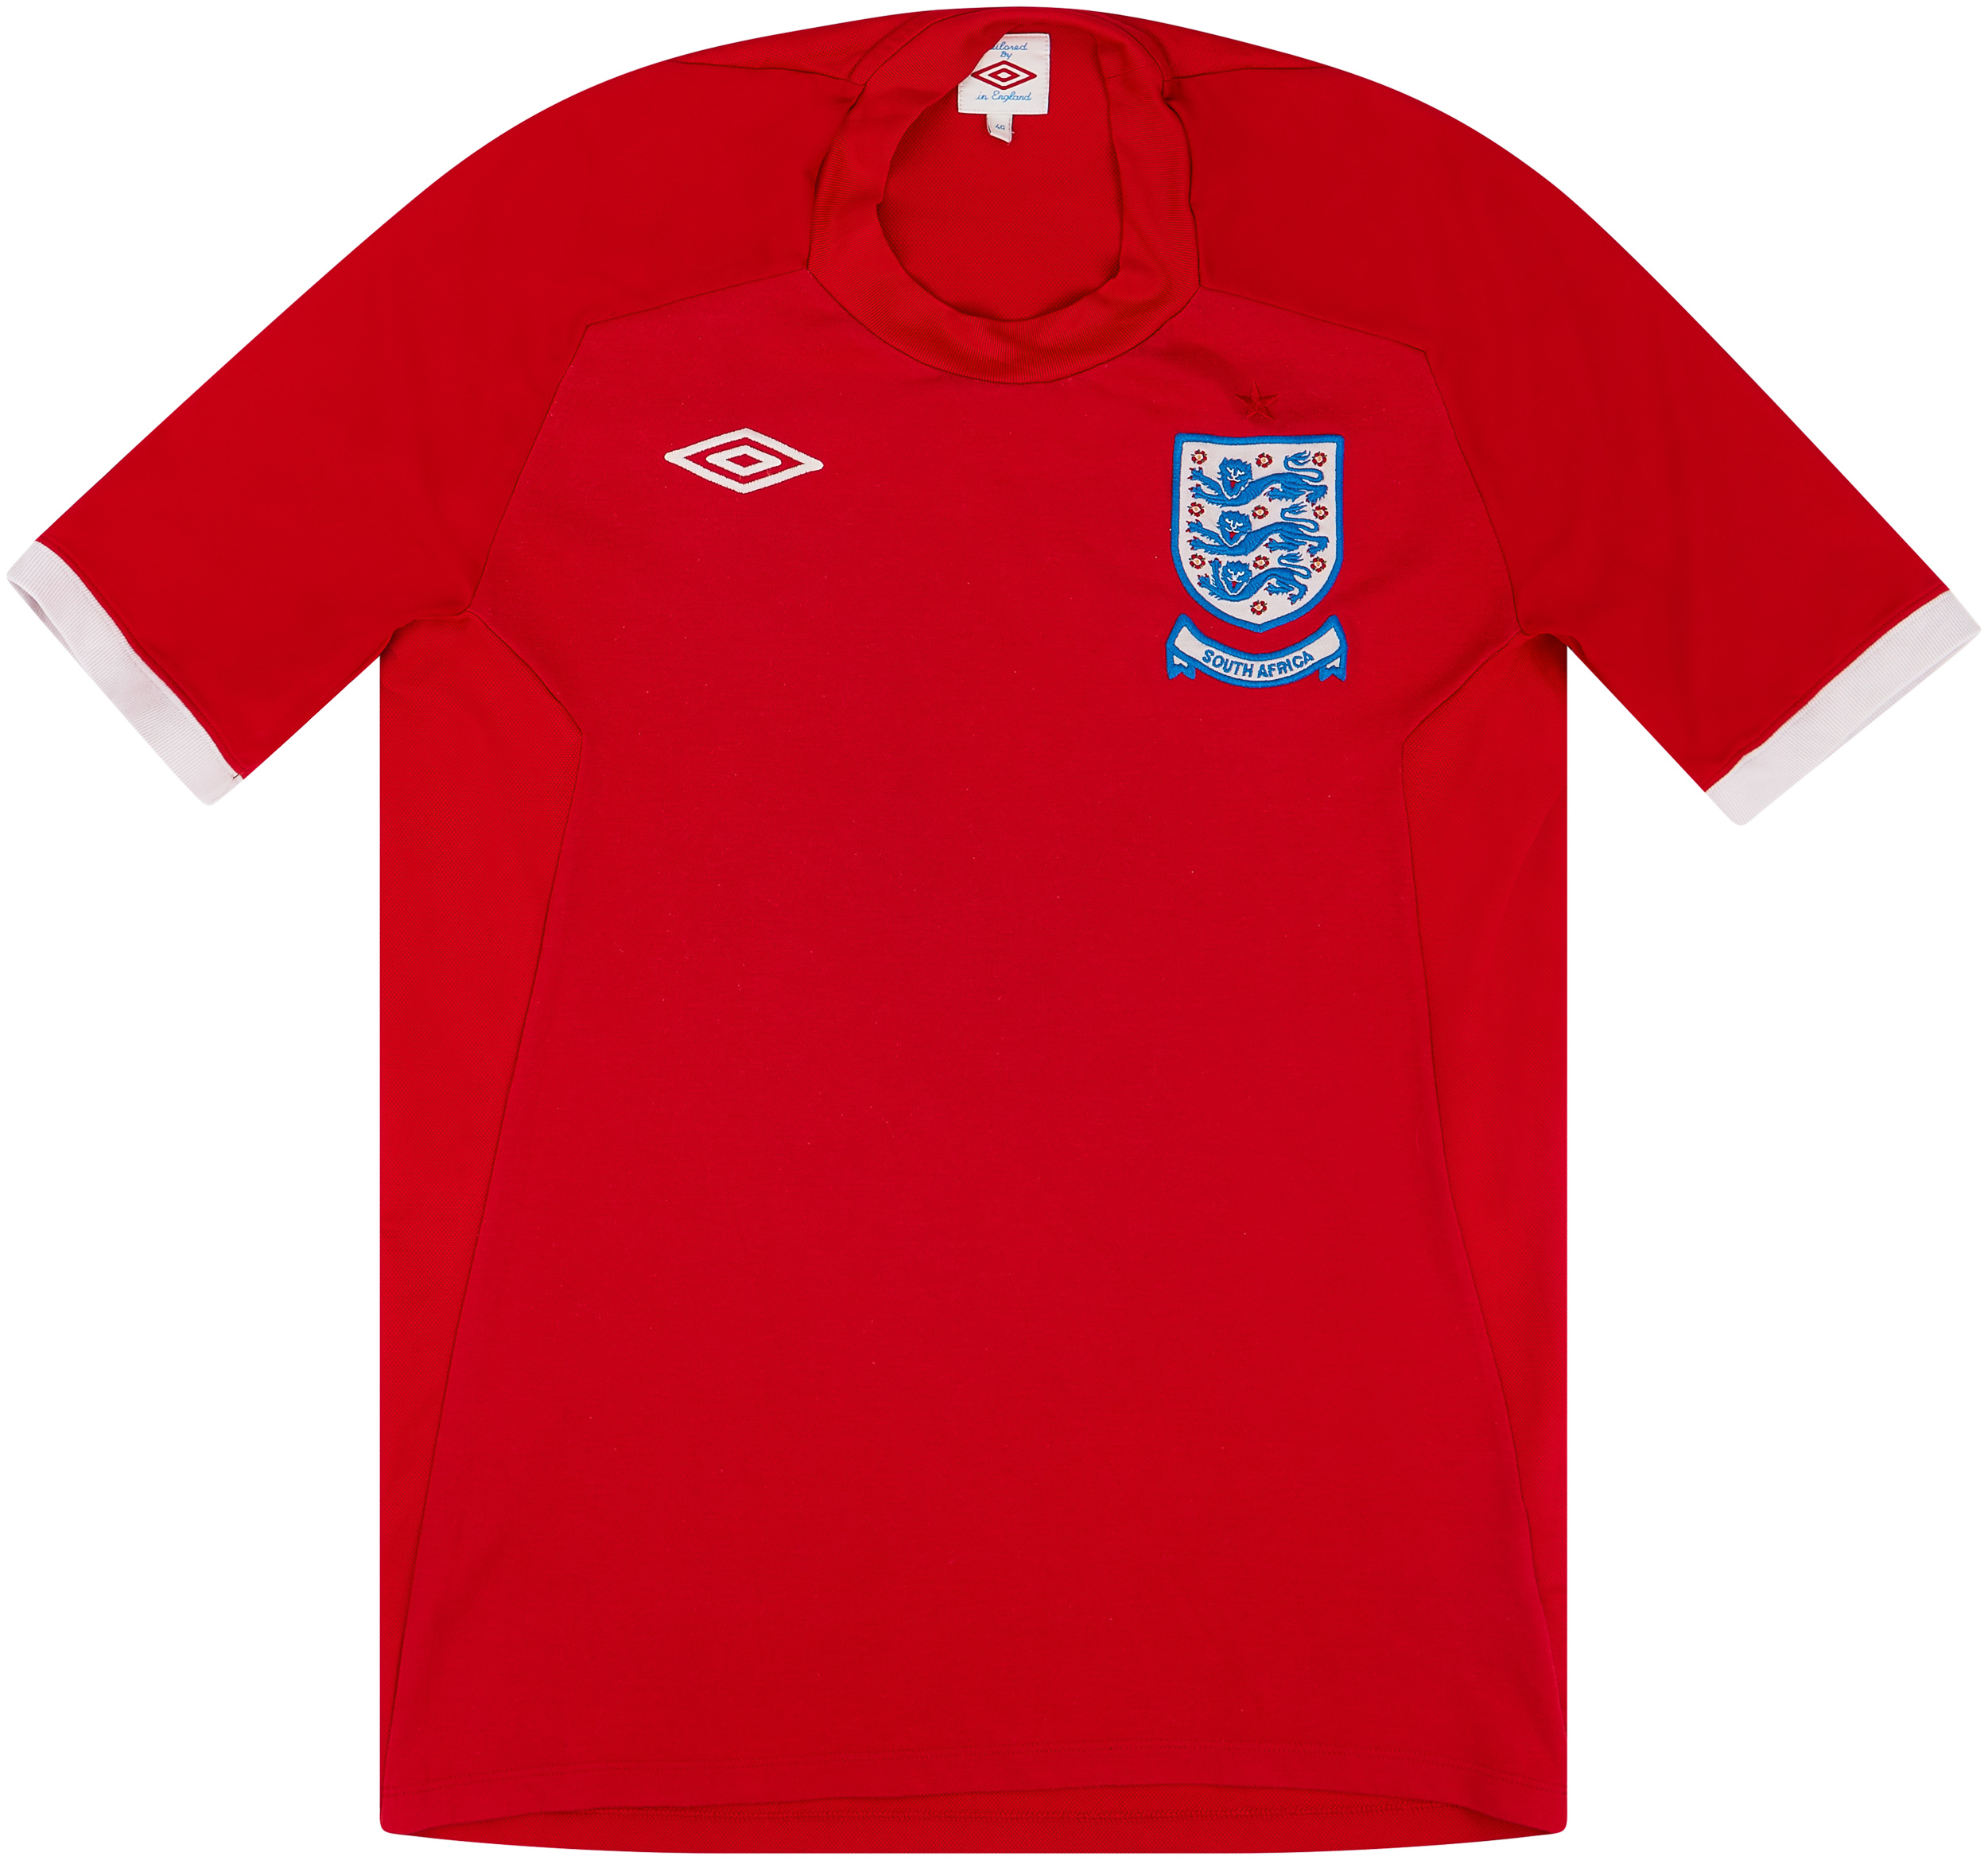 2010-11 England Away Shirt - 4/10 - ()